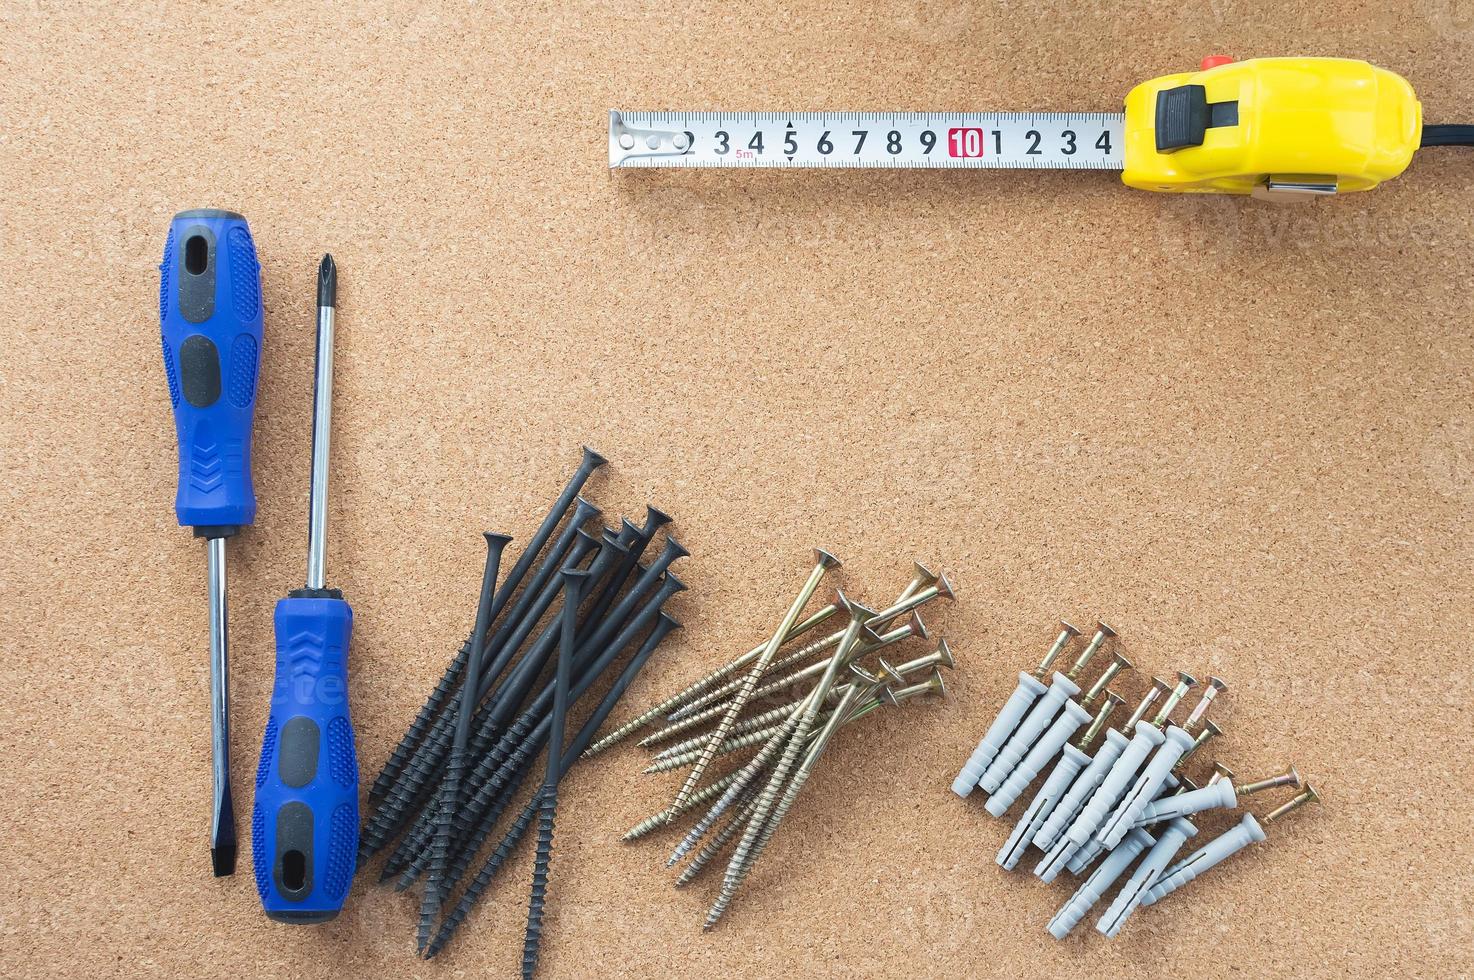 lavoro degli uomini. gli strumenti di riparazione sono sul tavolo. il concetto di lavoro domestico, officina. foto